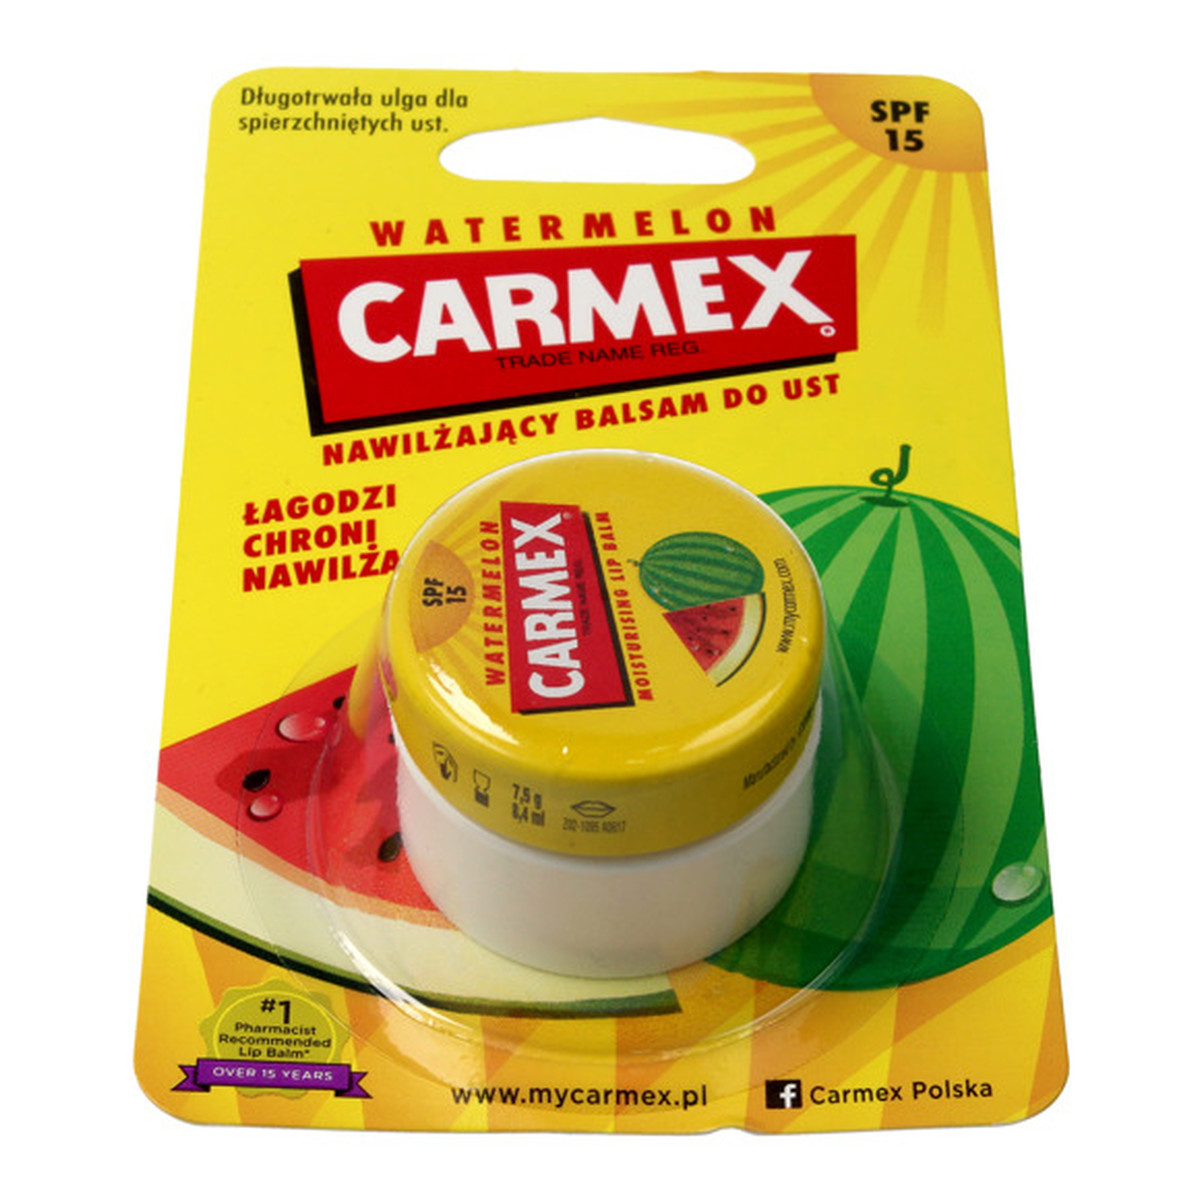 Carmex balsam do ust nawilżający Watermelon 7g